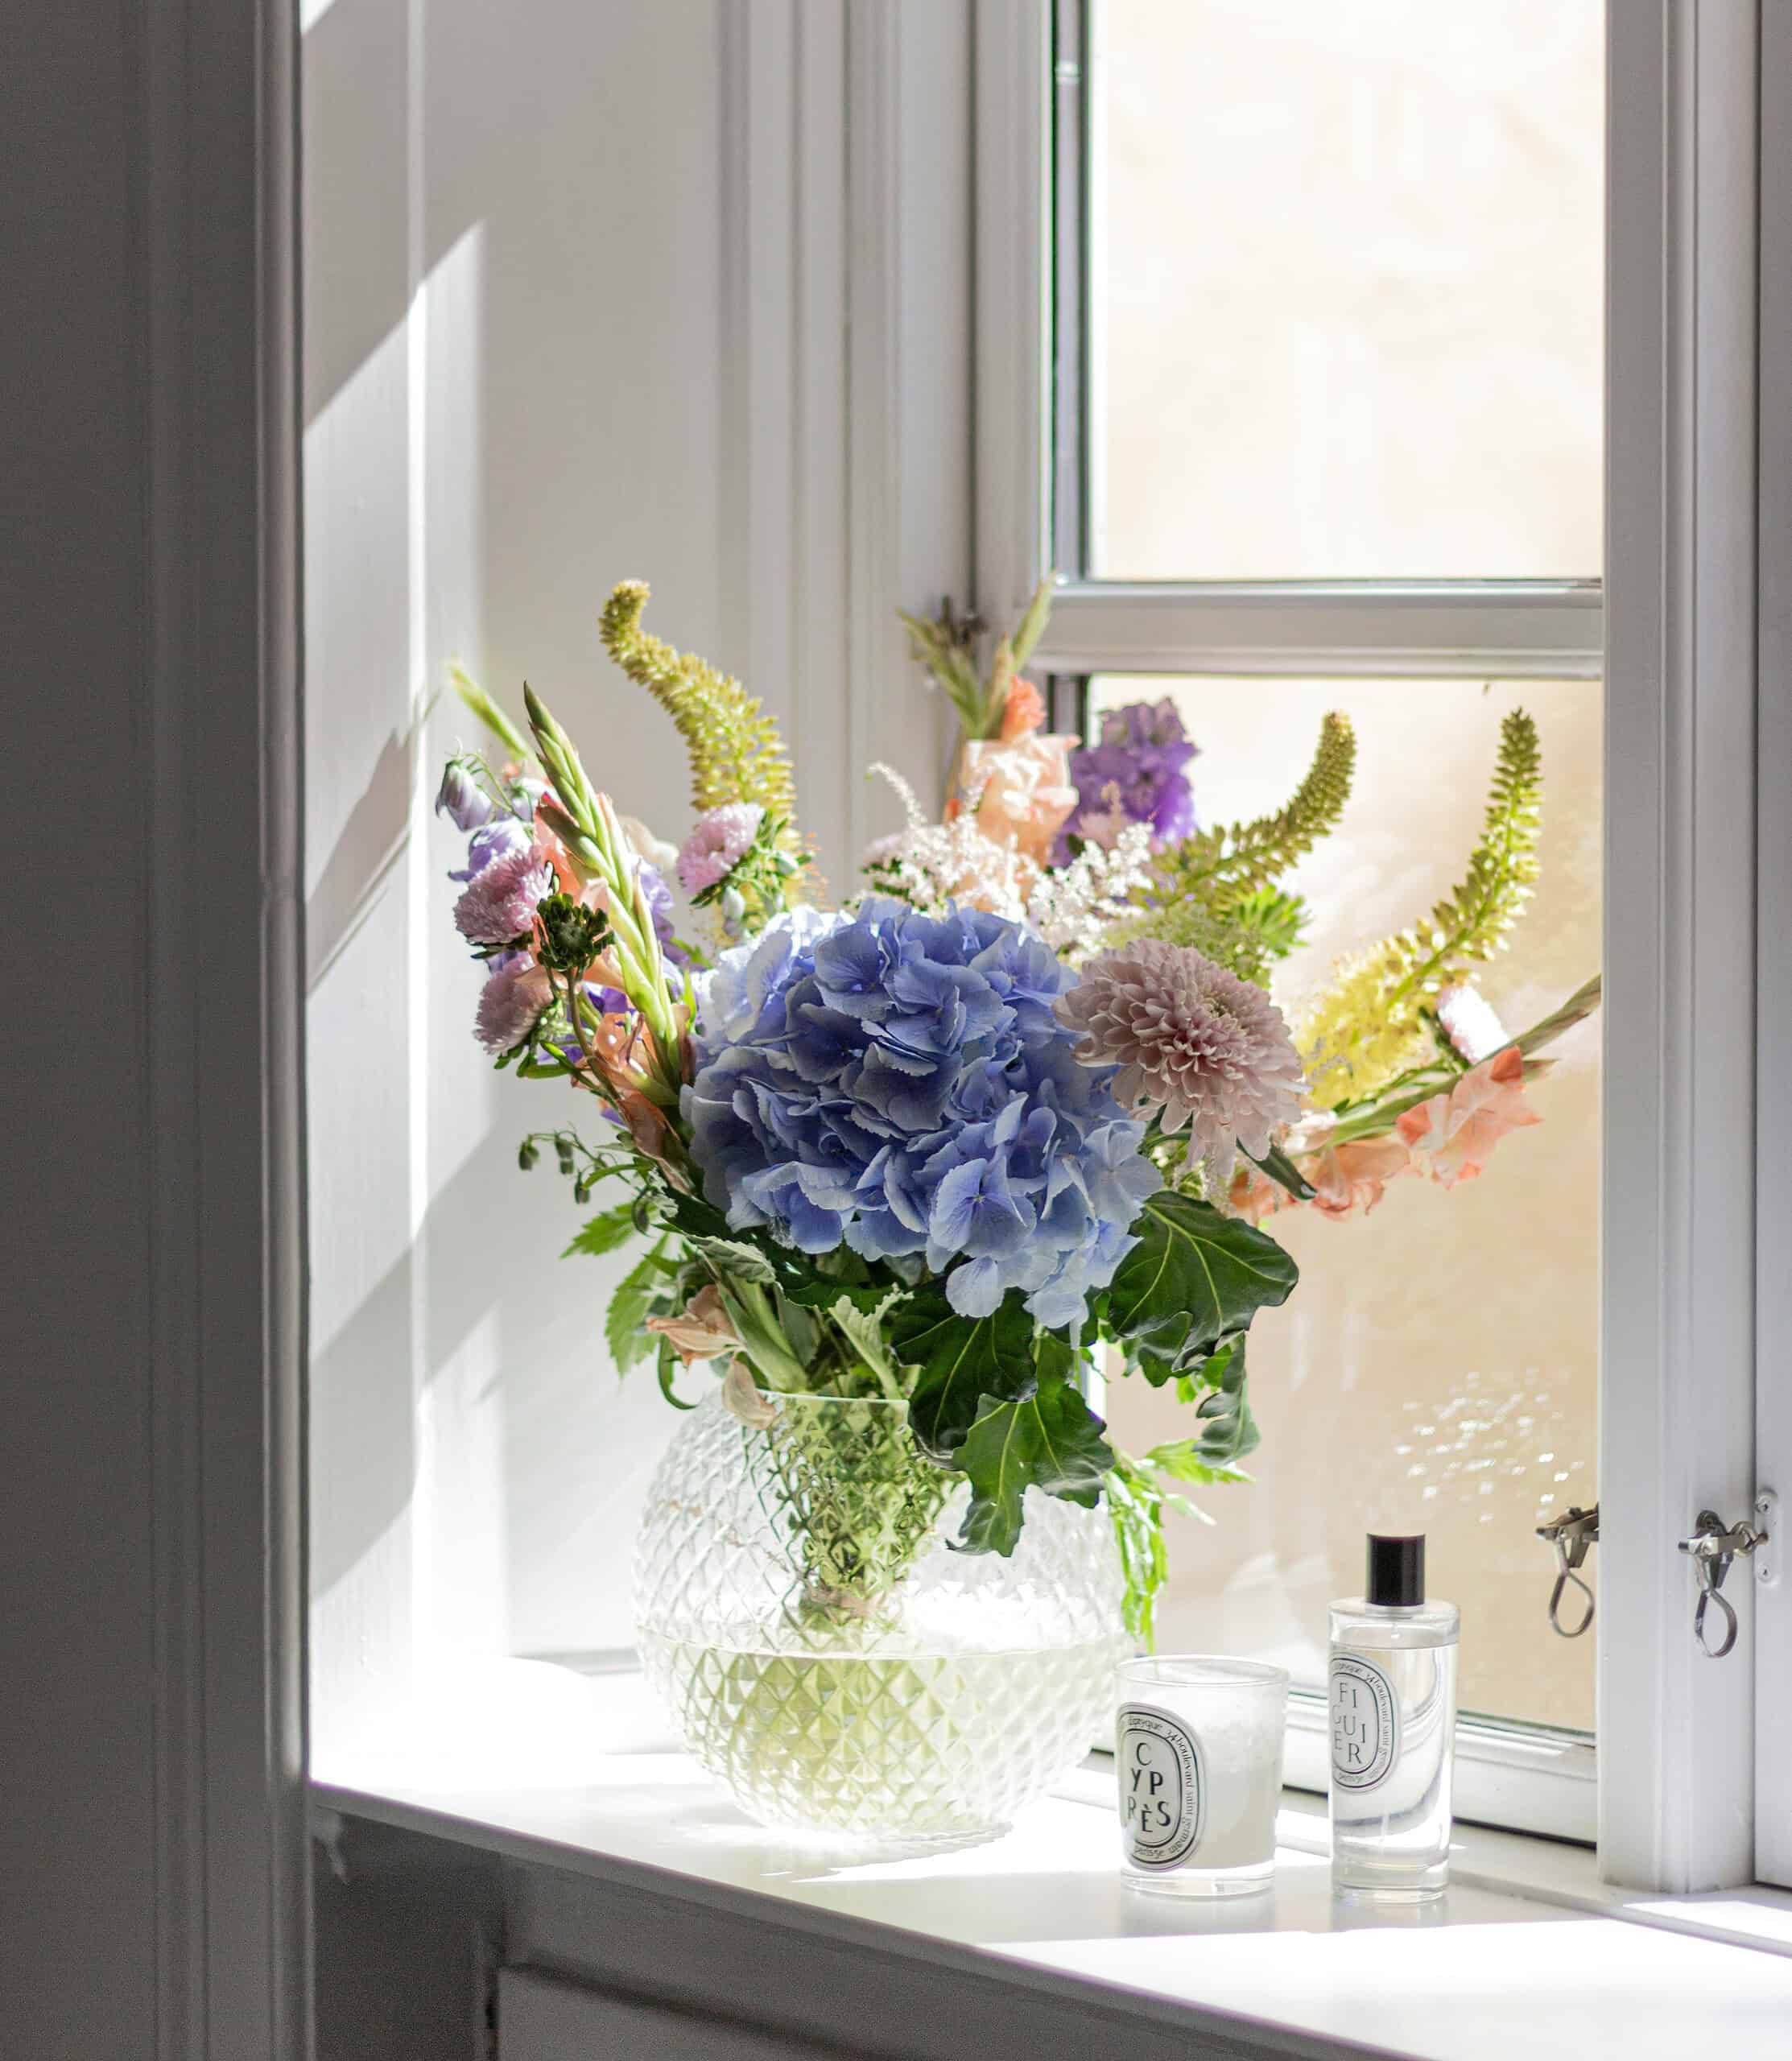 Schnittblumen als Blumenstrauß in einer Vase am Fenster